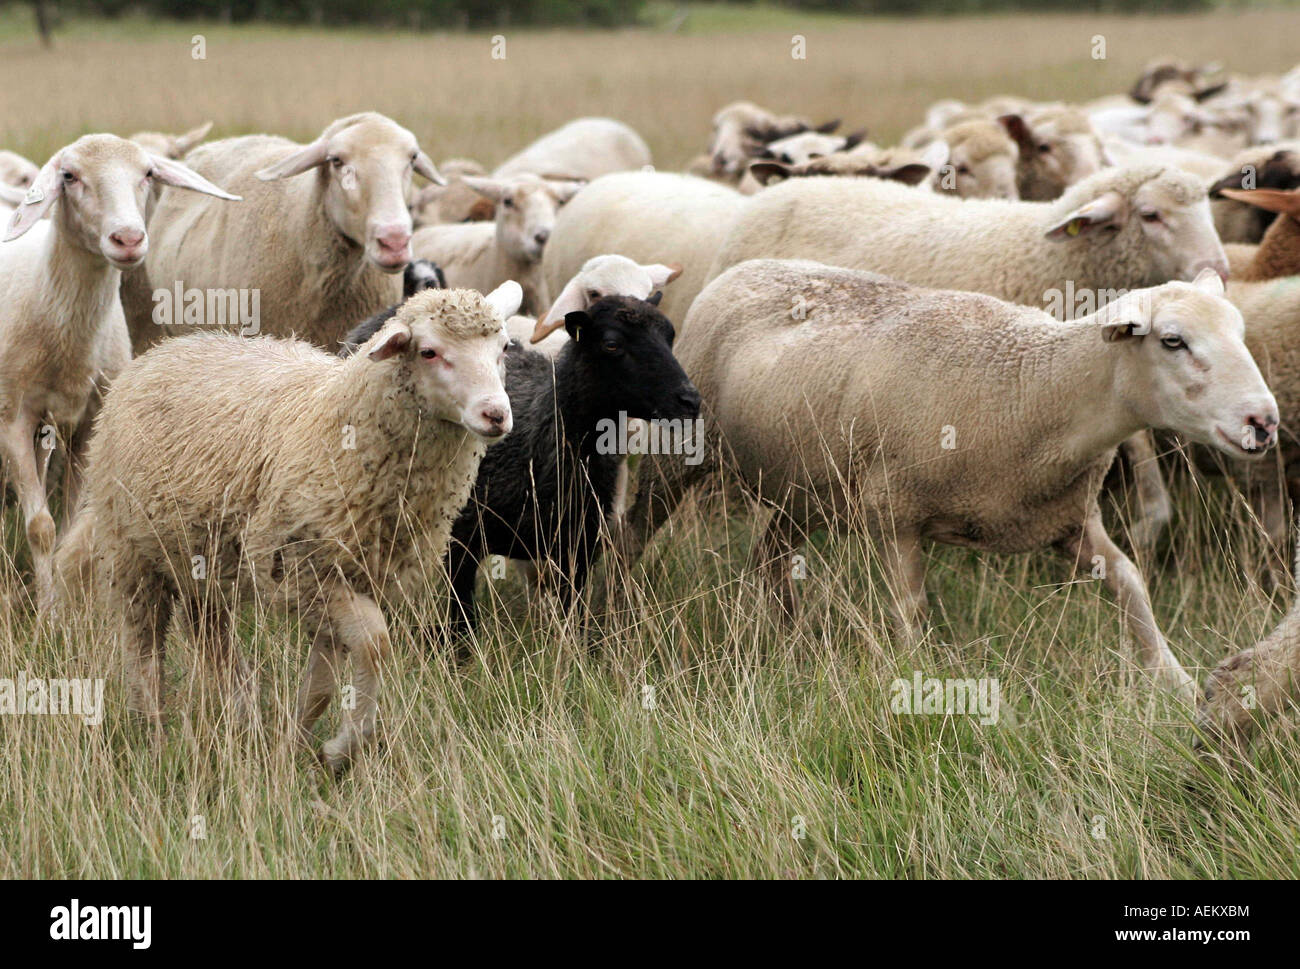 Schafe Schafherde mit schwarzem Schaf laufen vor den Toren Muenchens auf einer Wiese Froettmaninger Heide Muenchen am 18 08 2007 Stock Photo